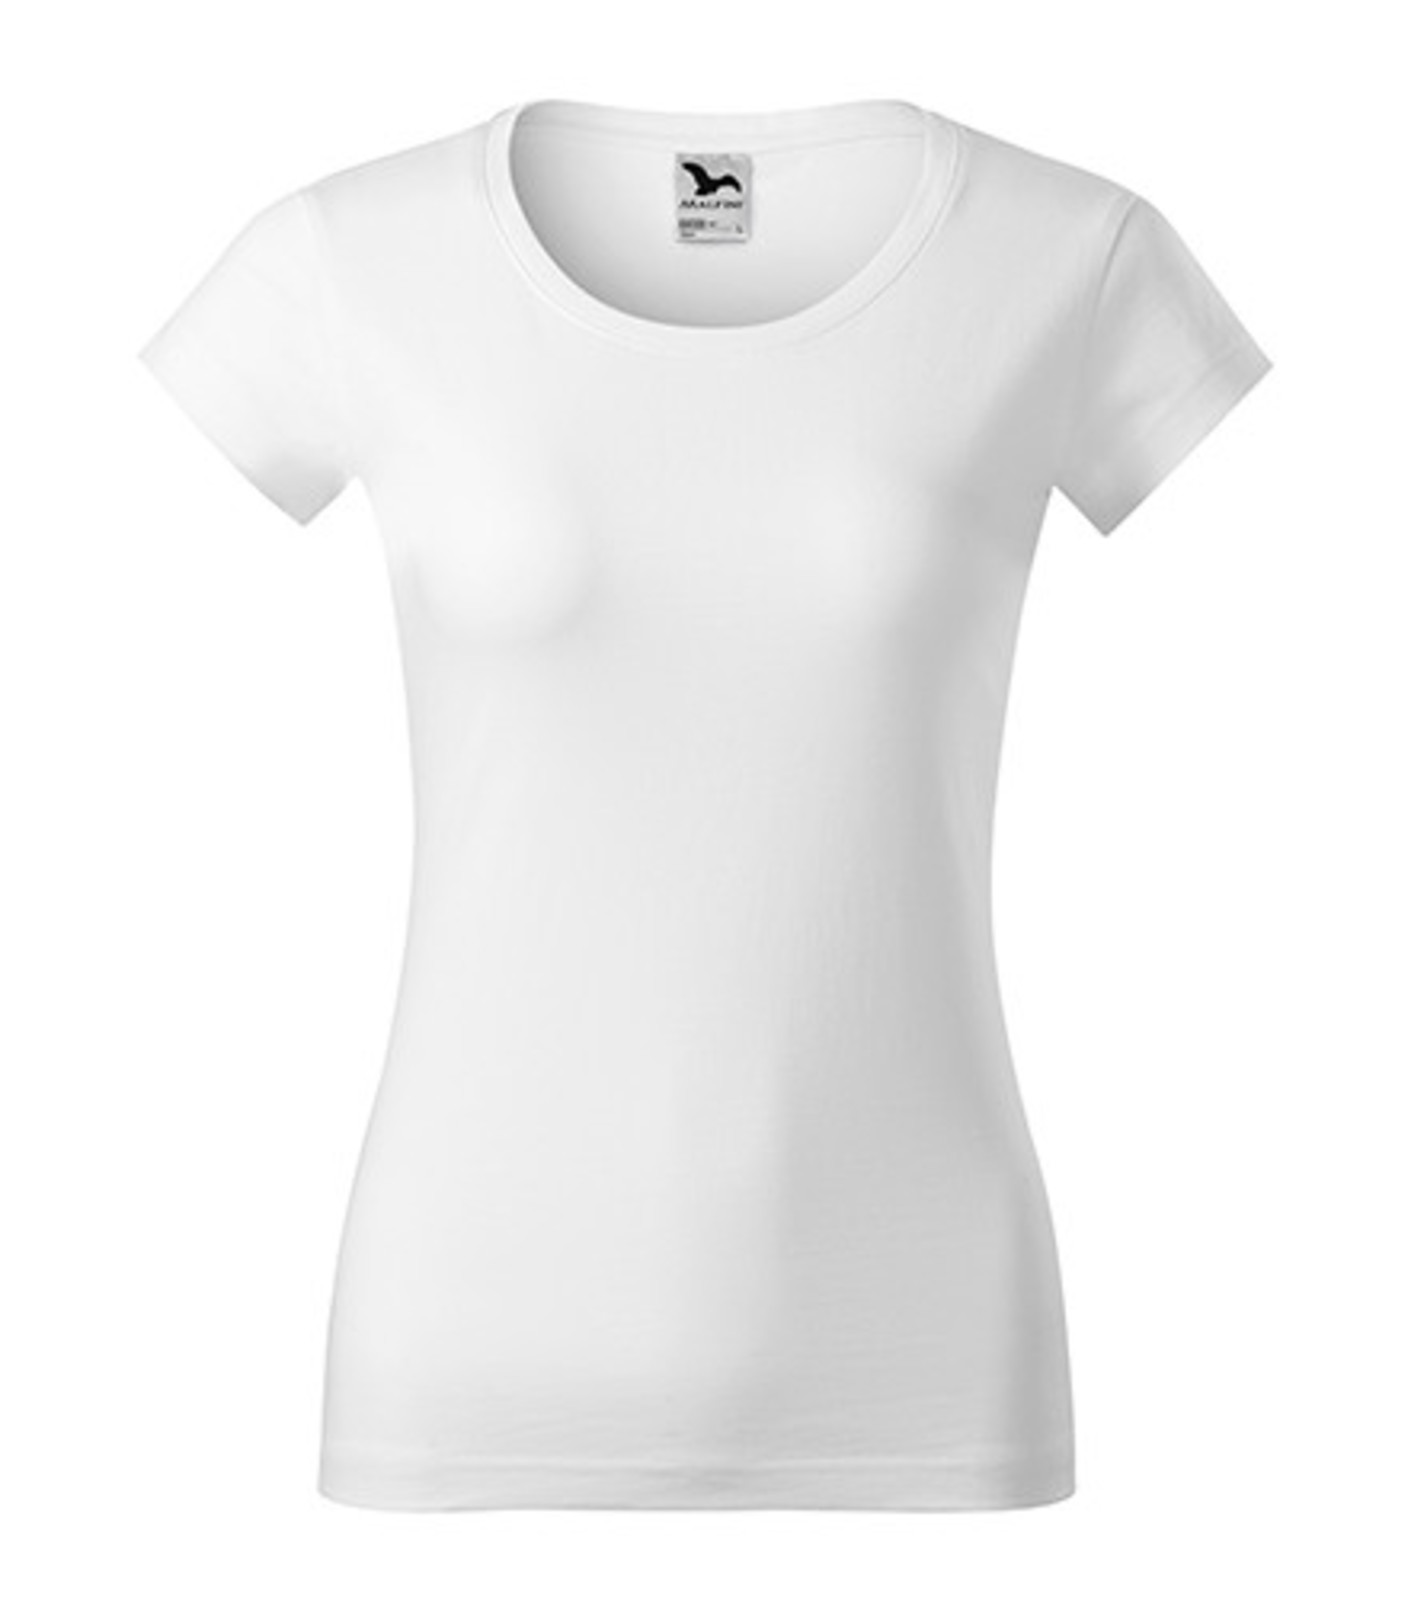 Dámske tričko Adler Viper 161 - veľkosť: M, farba: biela